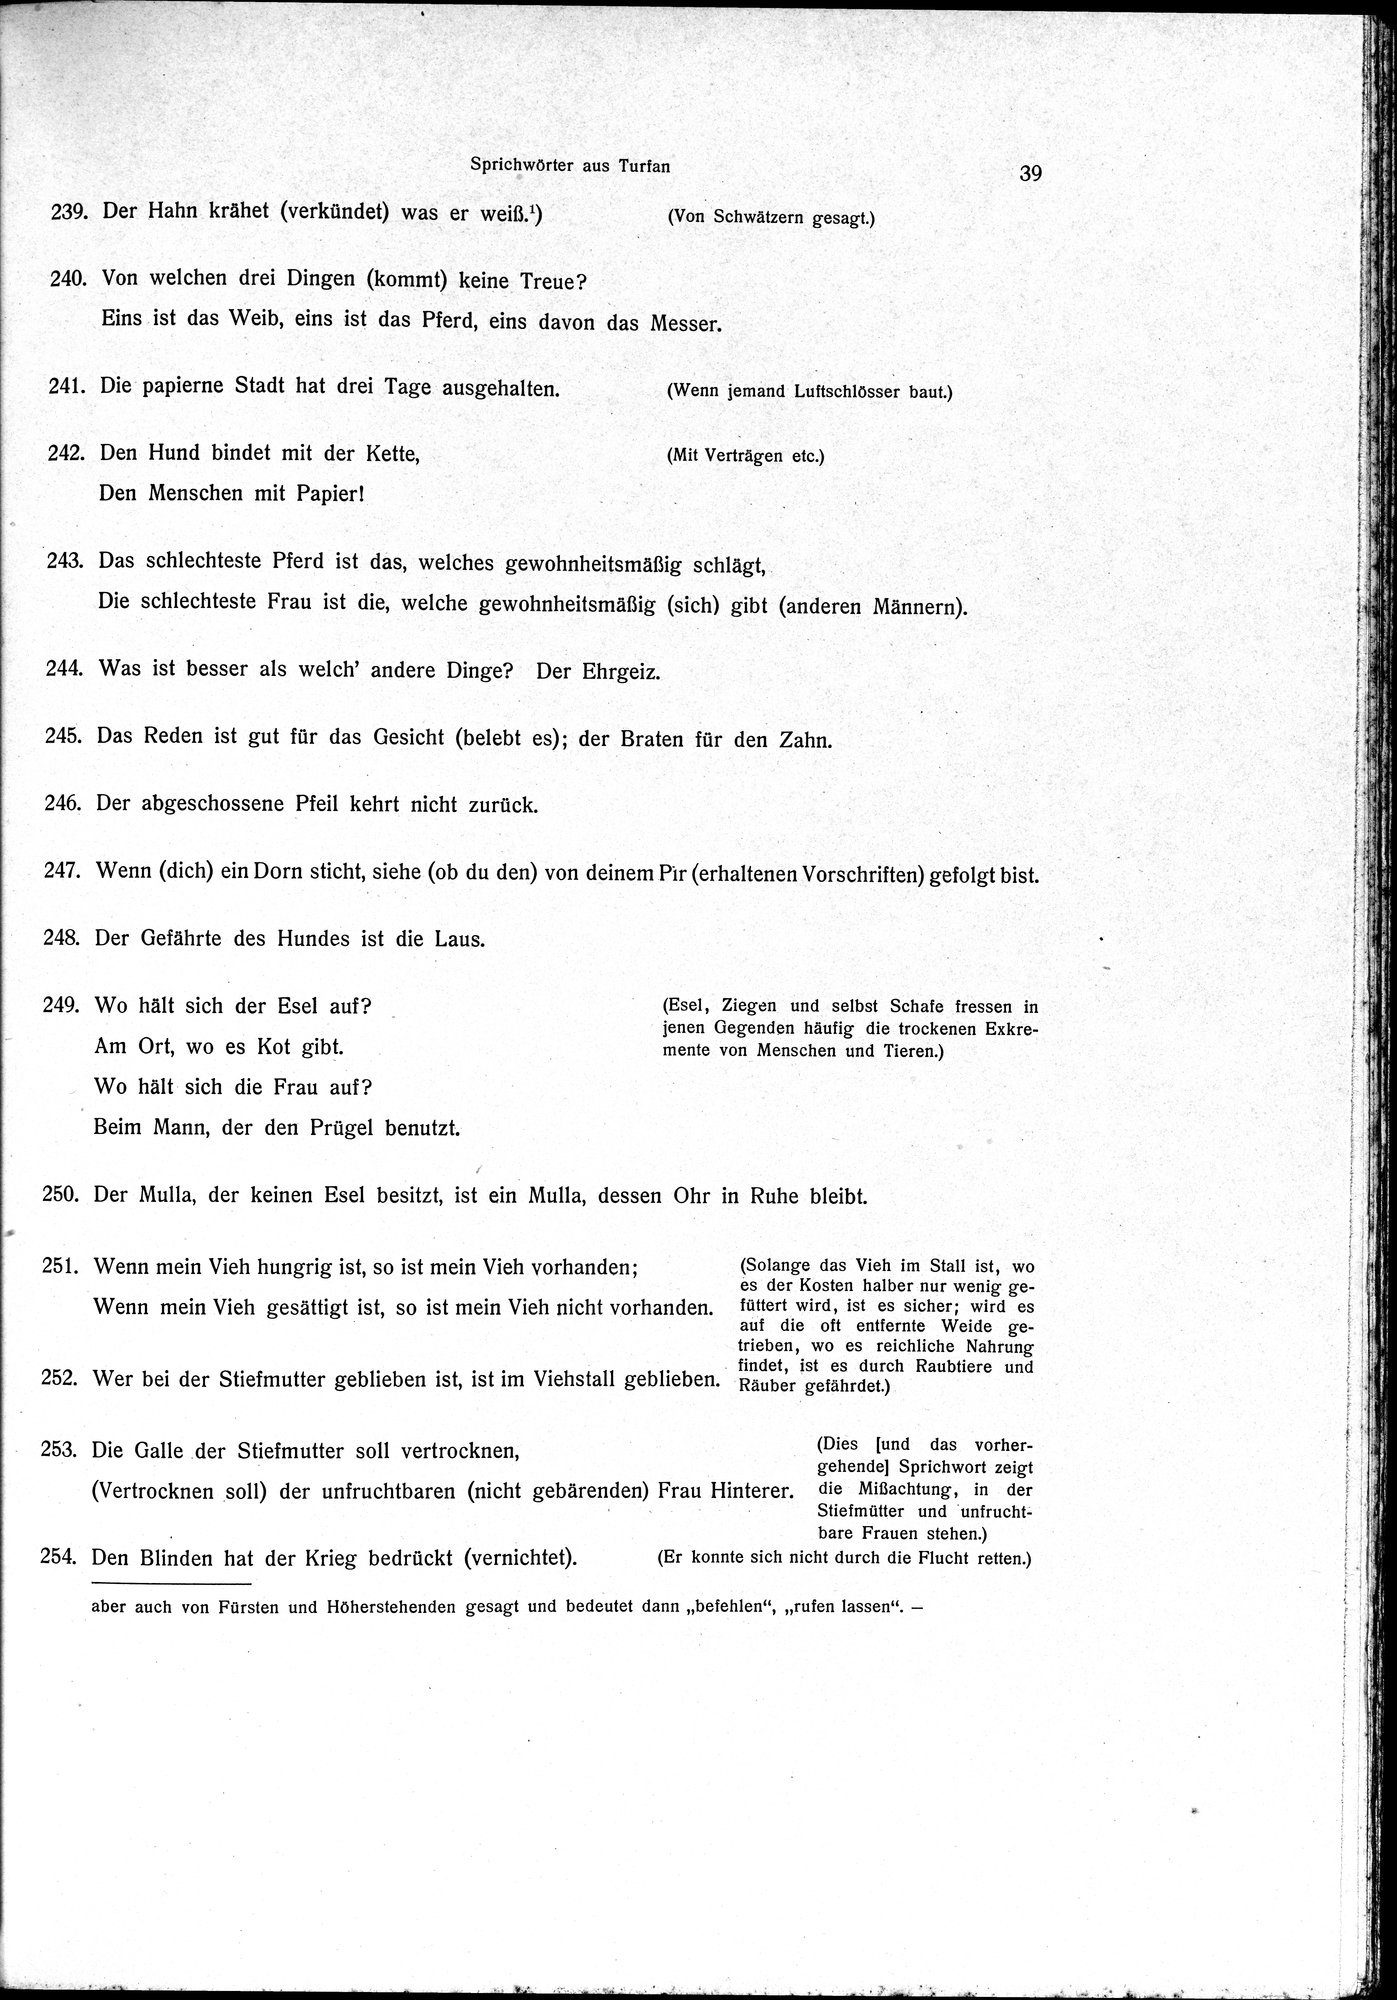 Sprichwörter und Lieder aus der Gegend von Turfan : vol.1 / Page 51 (Grayscale High Resolution Image)